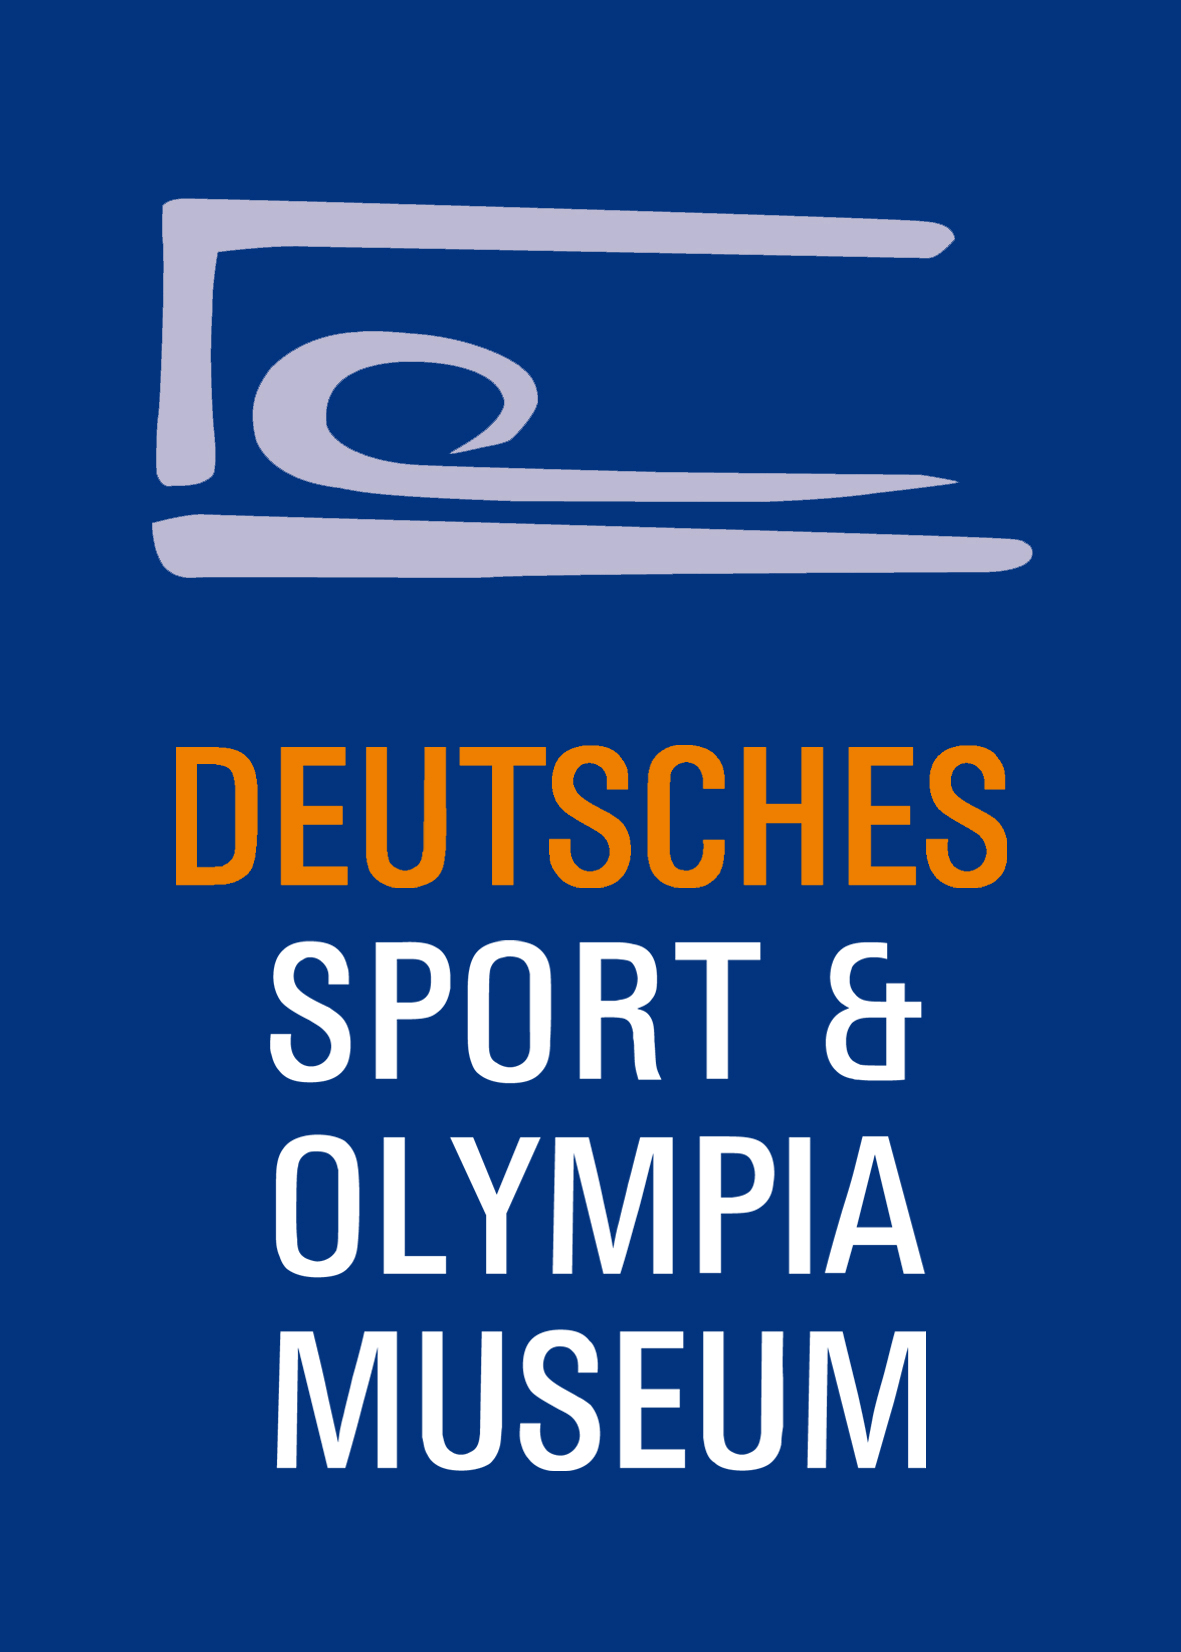 Höher, Schneller, Weiter Das Aktivprogramm im Deutschen Sport & Olympia Museum Für Gruppen, Sportvereine, Teams aus Unternehmen und Organisationen.